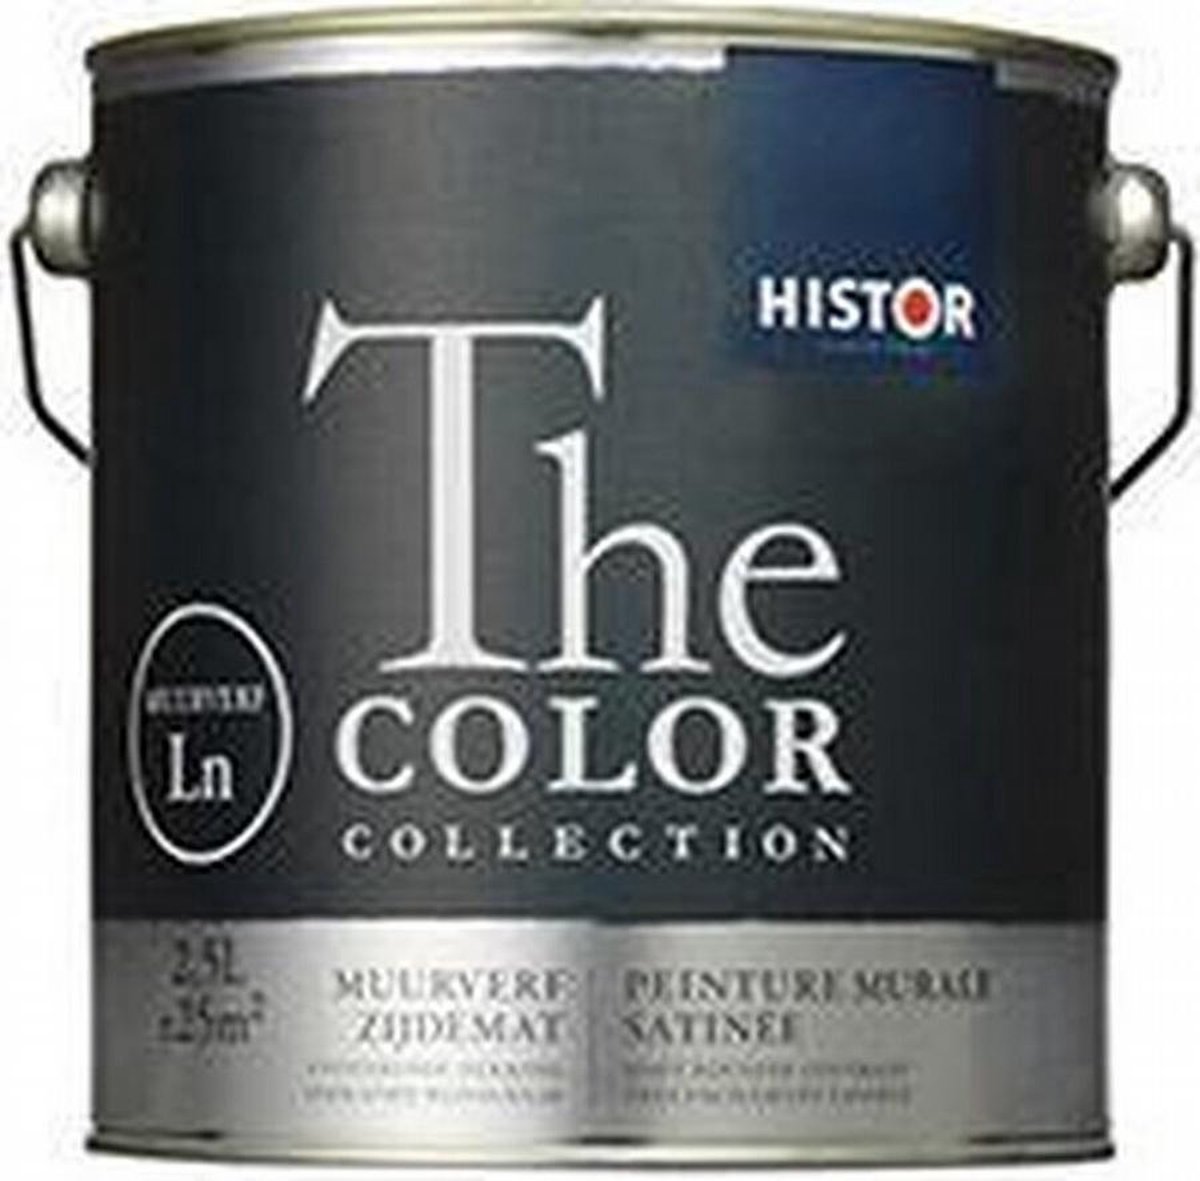 Histor The Color Collection Muurverf Zijdemat 1 liter op kleur